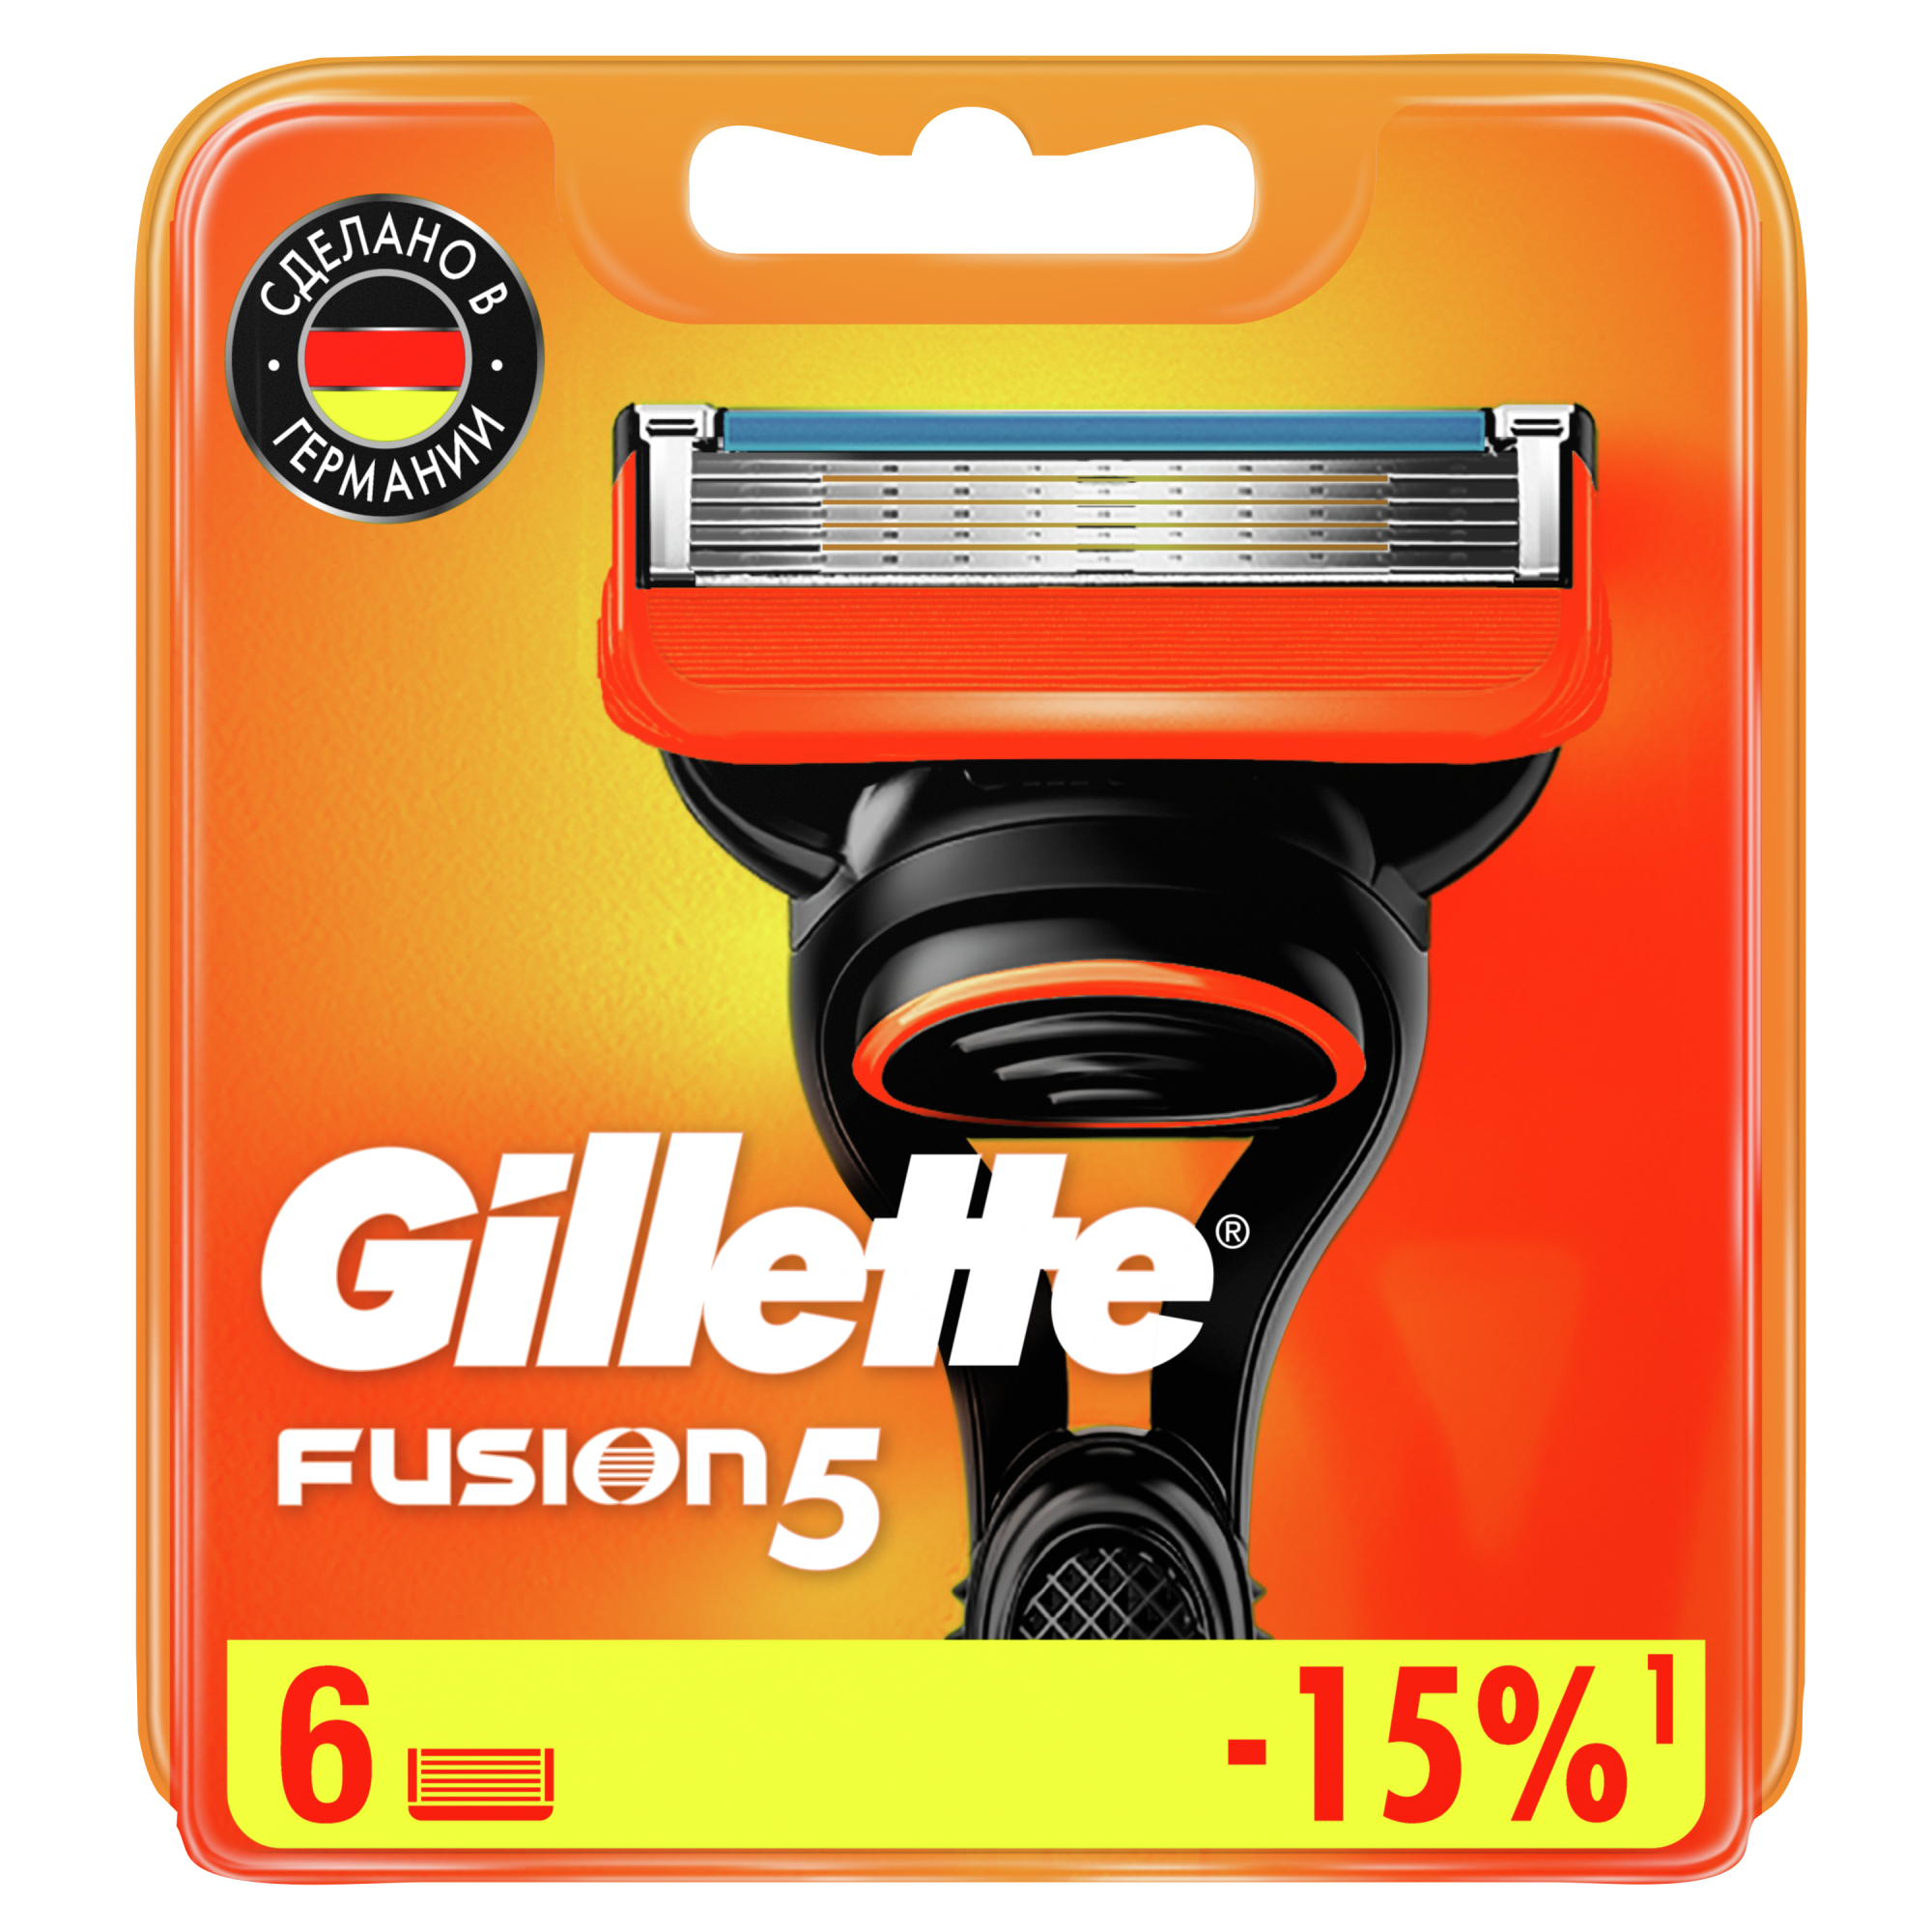 Сменные кассеты для мужской бритвы Gillette Fusion5 Power, с 5 лезвиями, c точным триммером для труднодоступных мест, для гладкого бритья надолго, 6 шт кассеты сменные для бритья bic click soleil 5 лезвий женские 4 шт